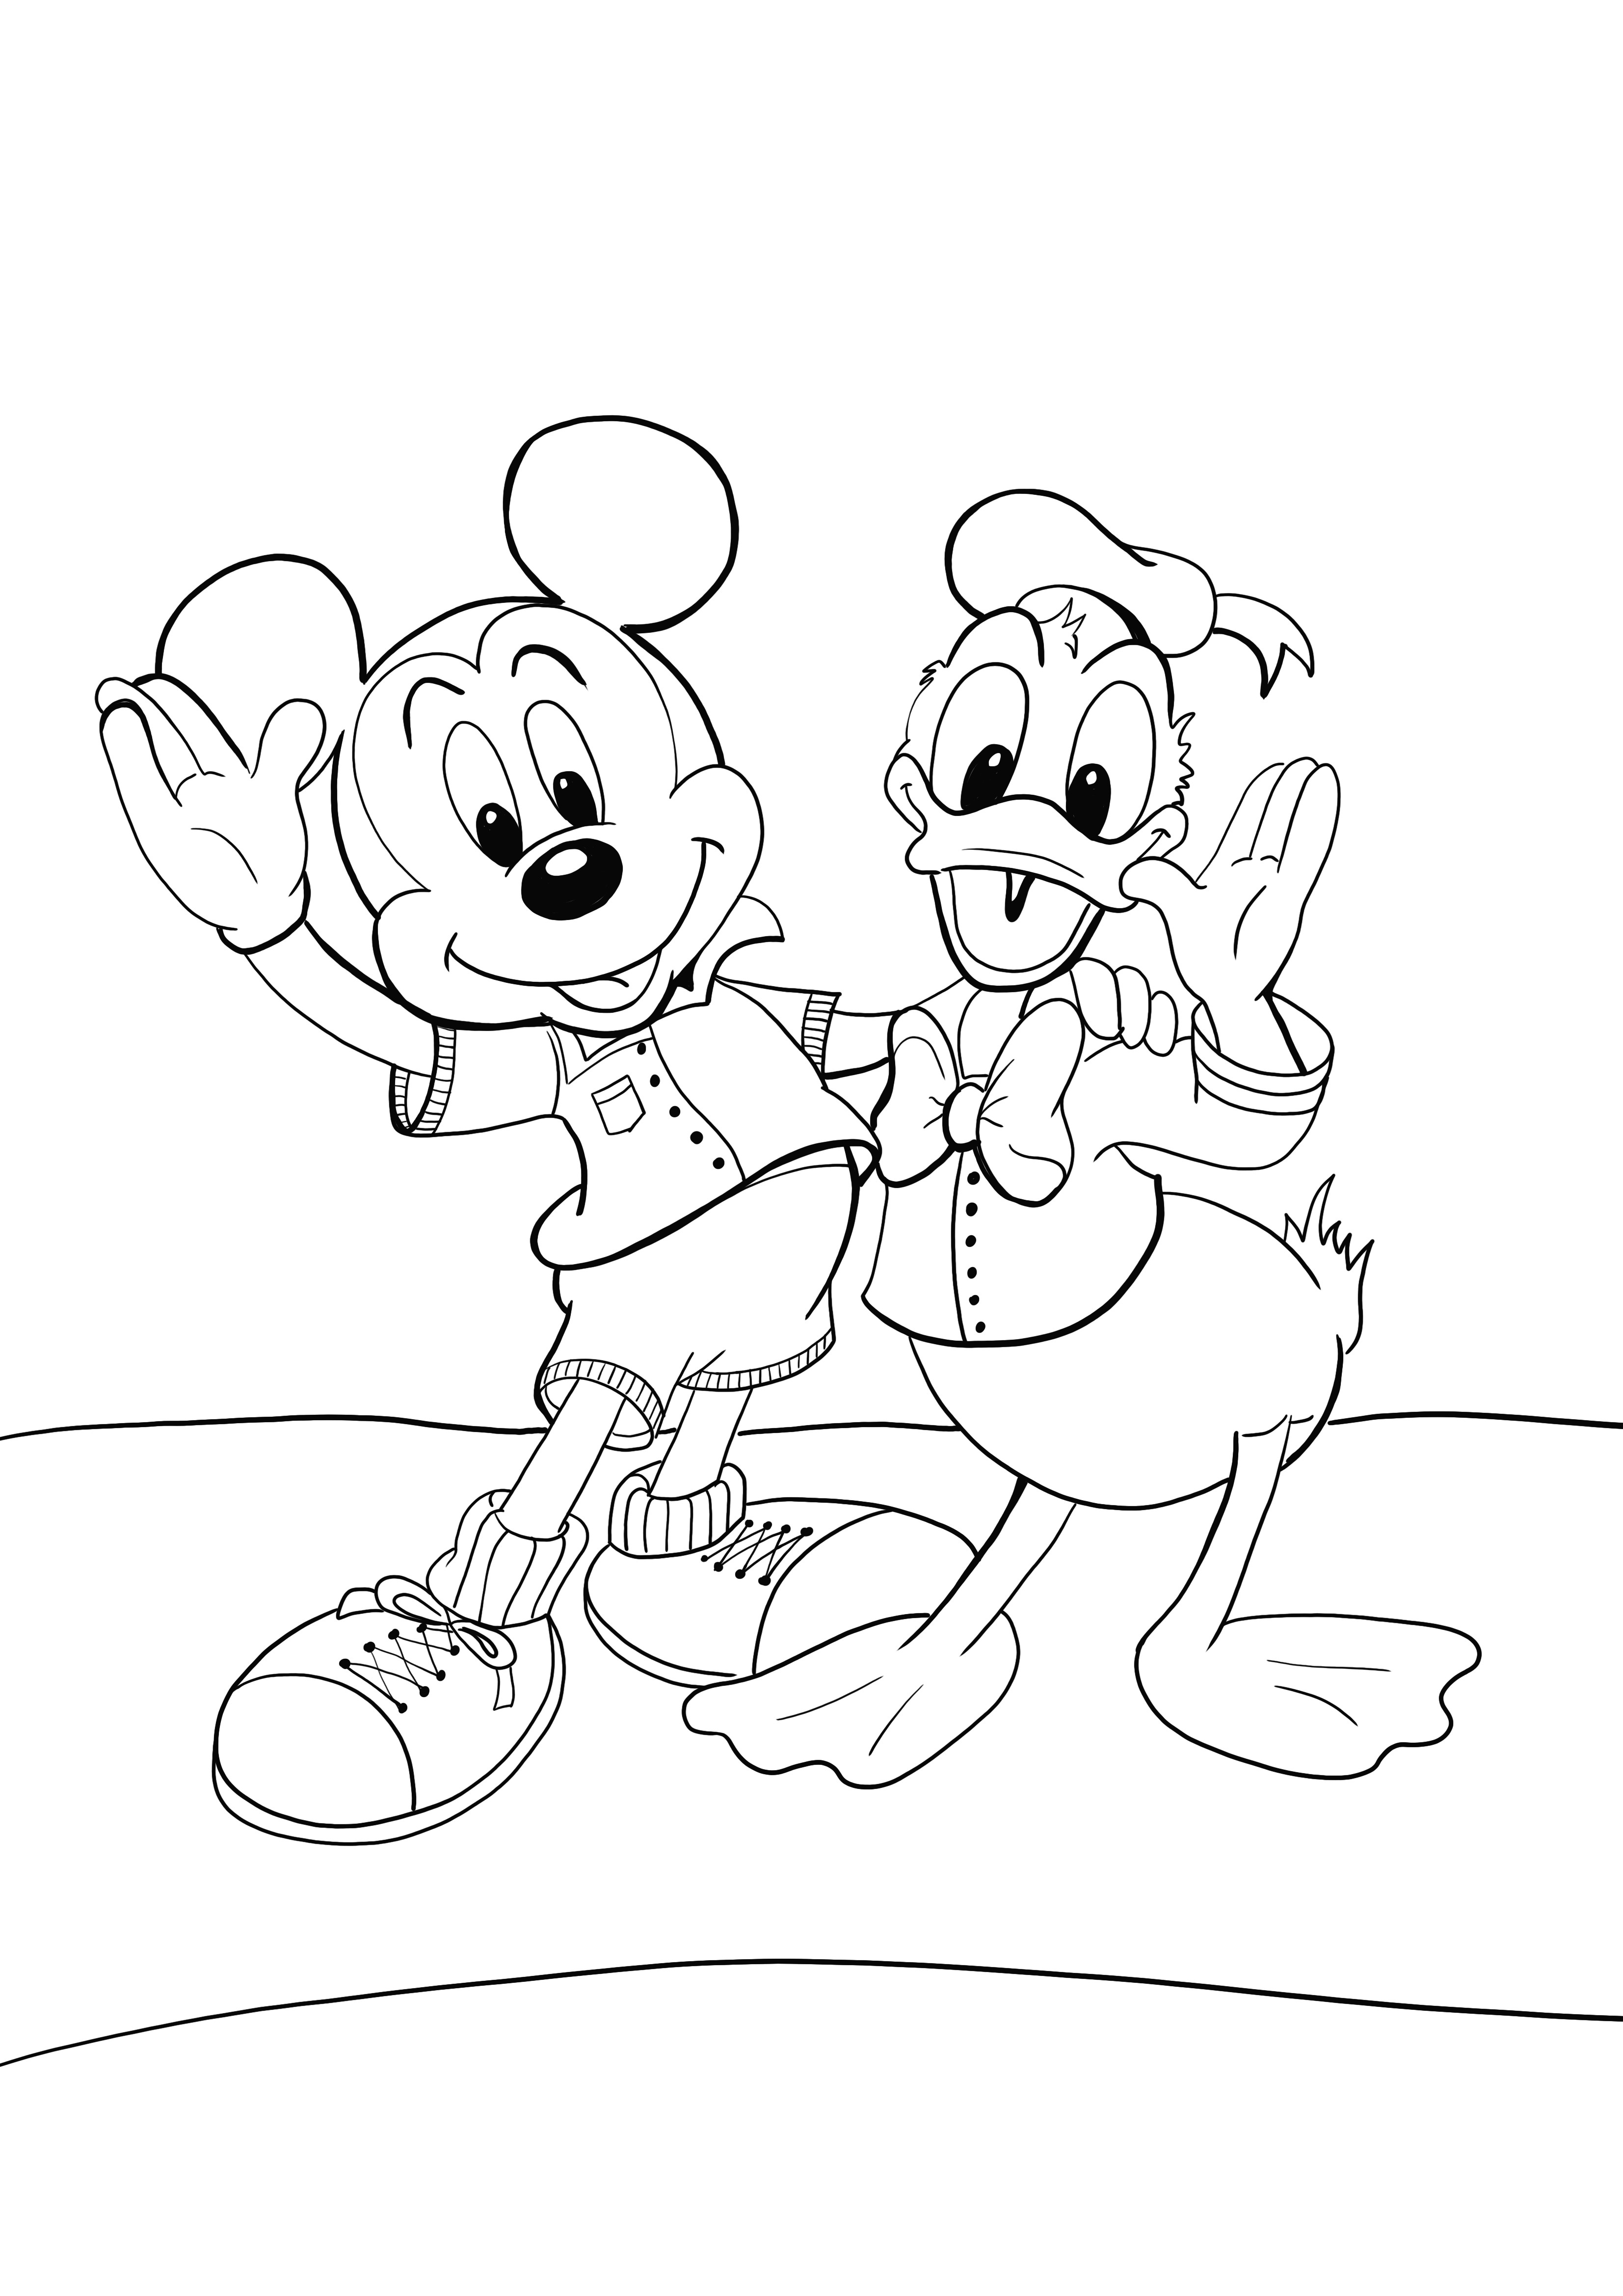 Kedvenc Mikey és Donald kép, amelyet ingyenesen kiszínezhet